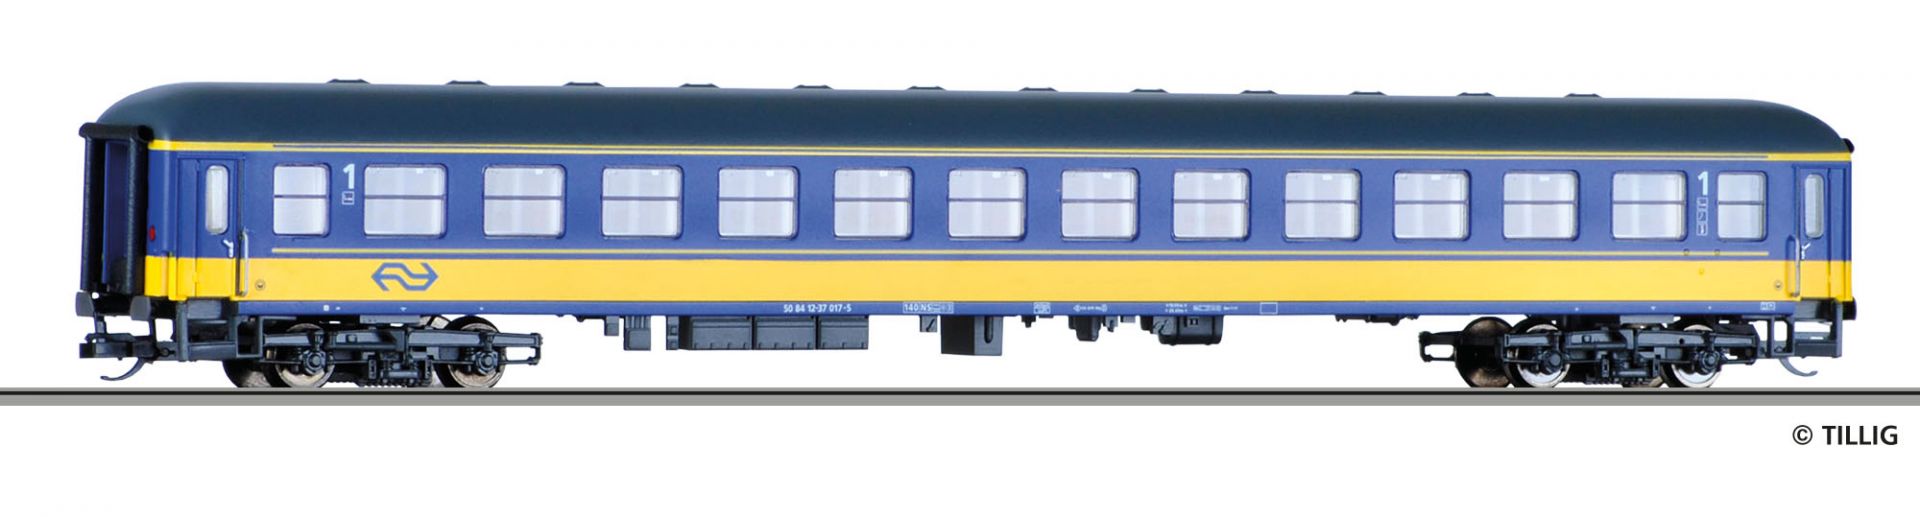 16204 | Reisezugwagen NS -werksseitig ausverkauft-